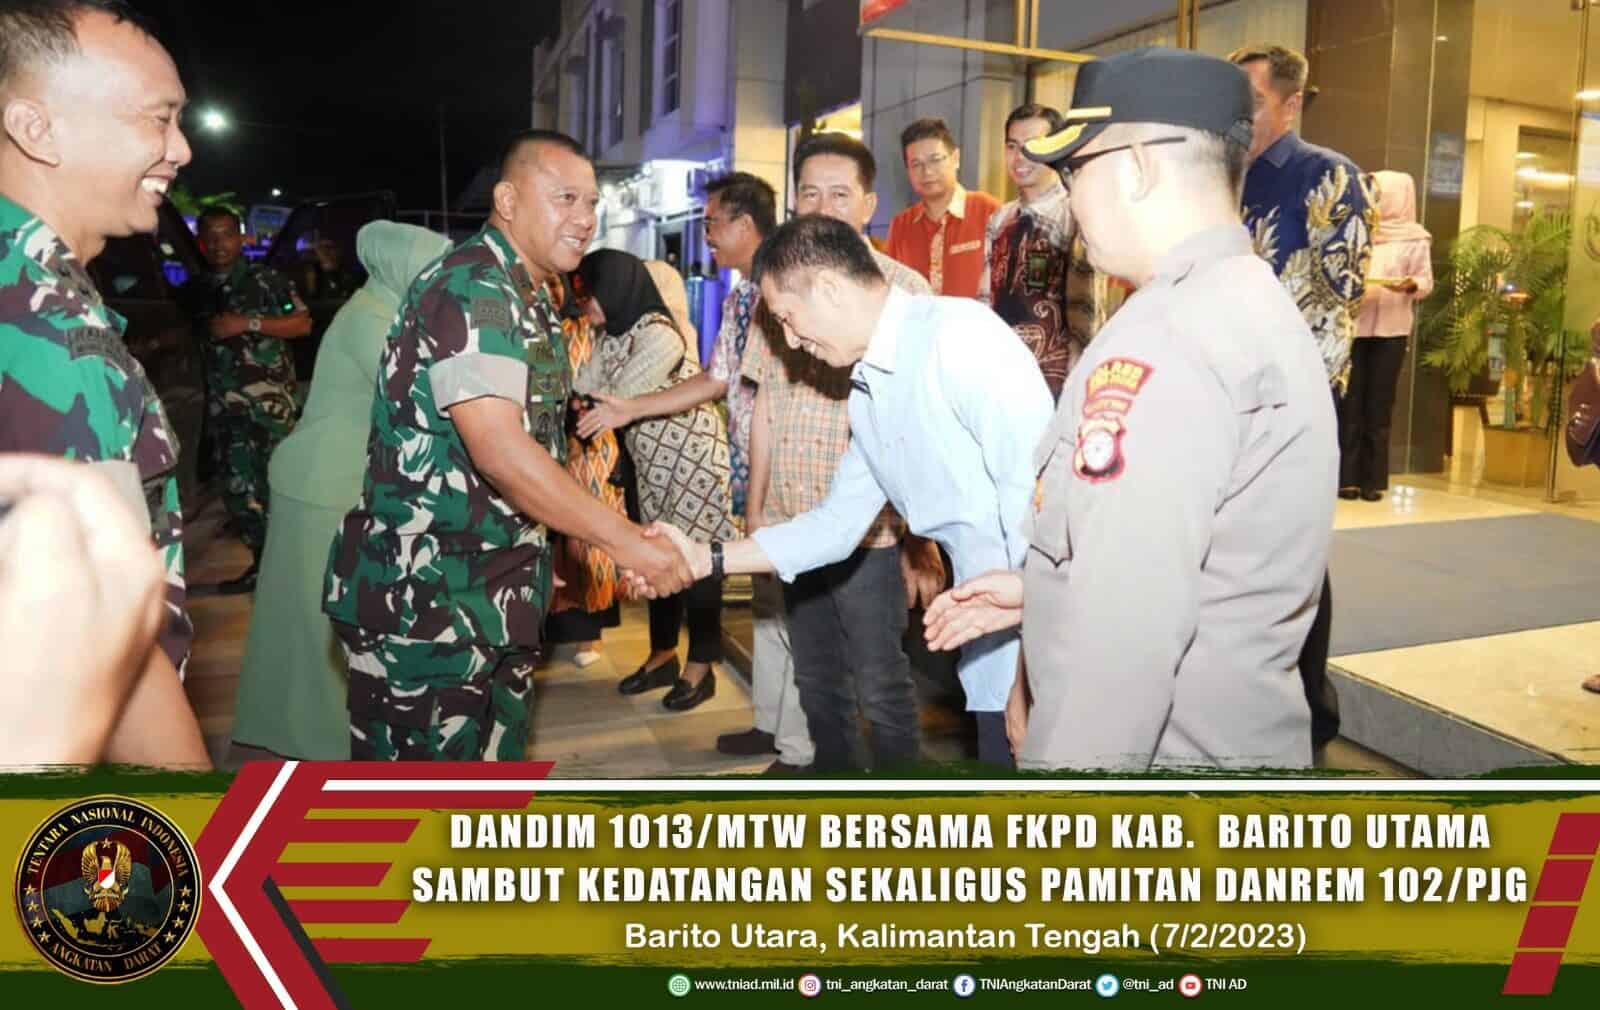 Dandim 1013/Mtw Bersama FKPD Kab. Barito Utara Sambut Kedatangan Sekaligus Pamitan Danrem 102/Pjg